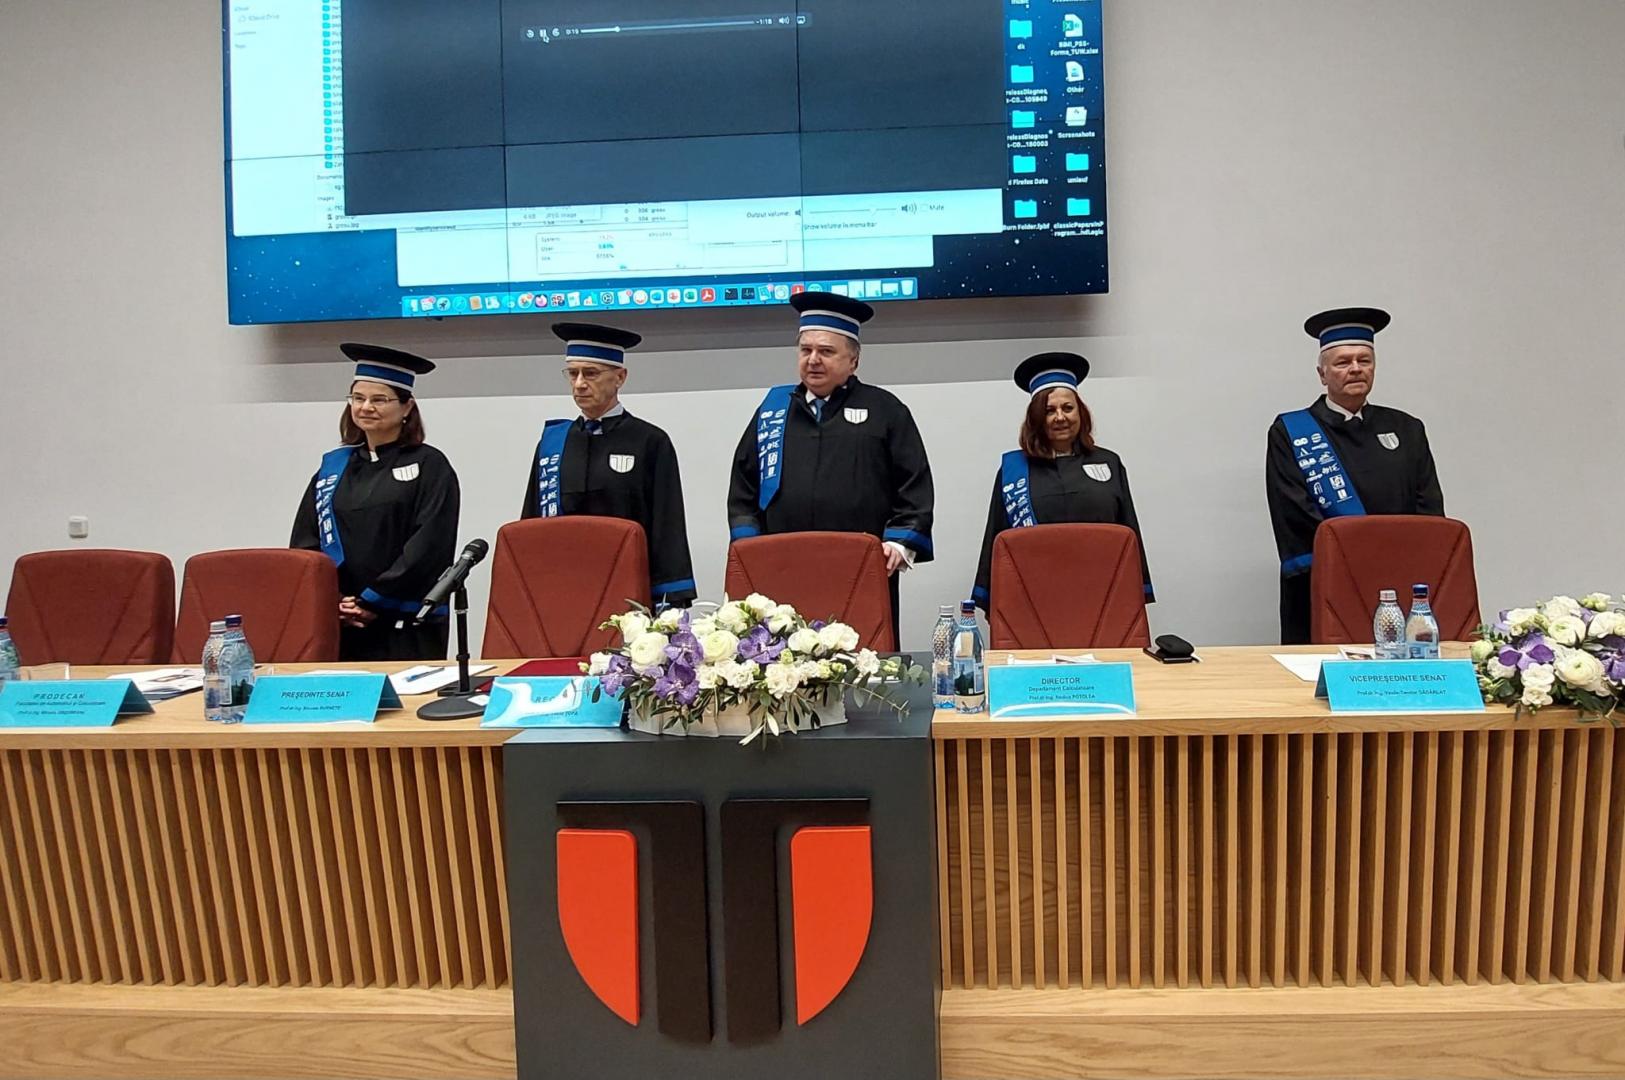 Universitatea Tehnică din Cluj-Napoca a acordat titlul de Doctor Honoris Causa domnului Prof. dr. ing. Radu Grosu, Universitatea Tehnică din Viena